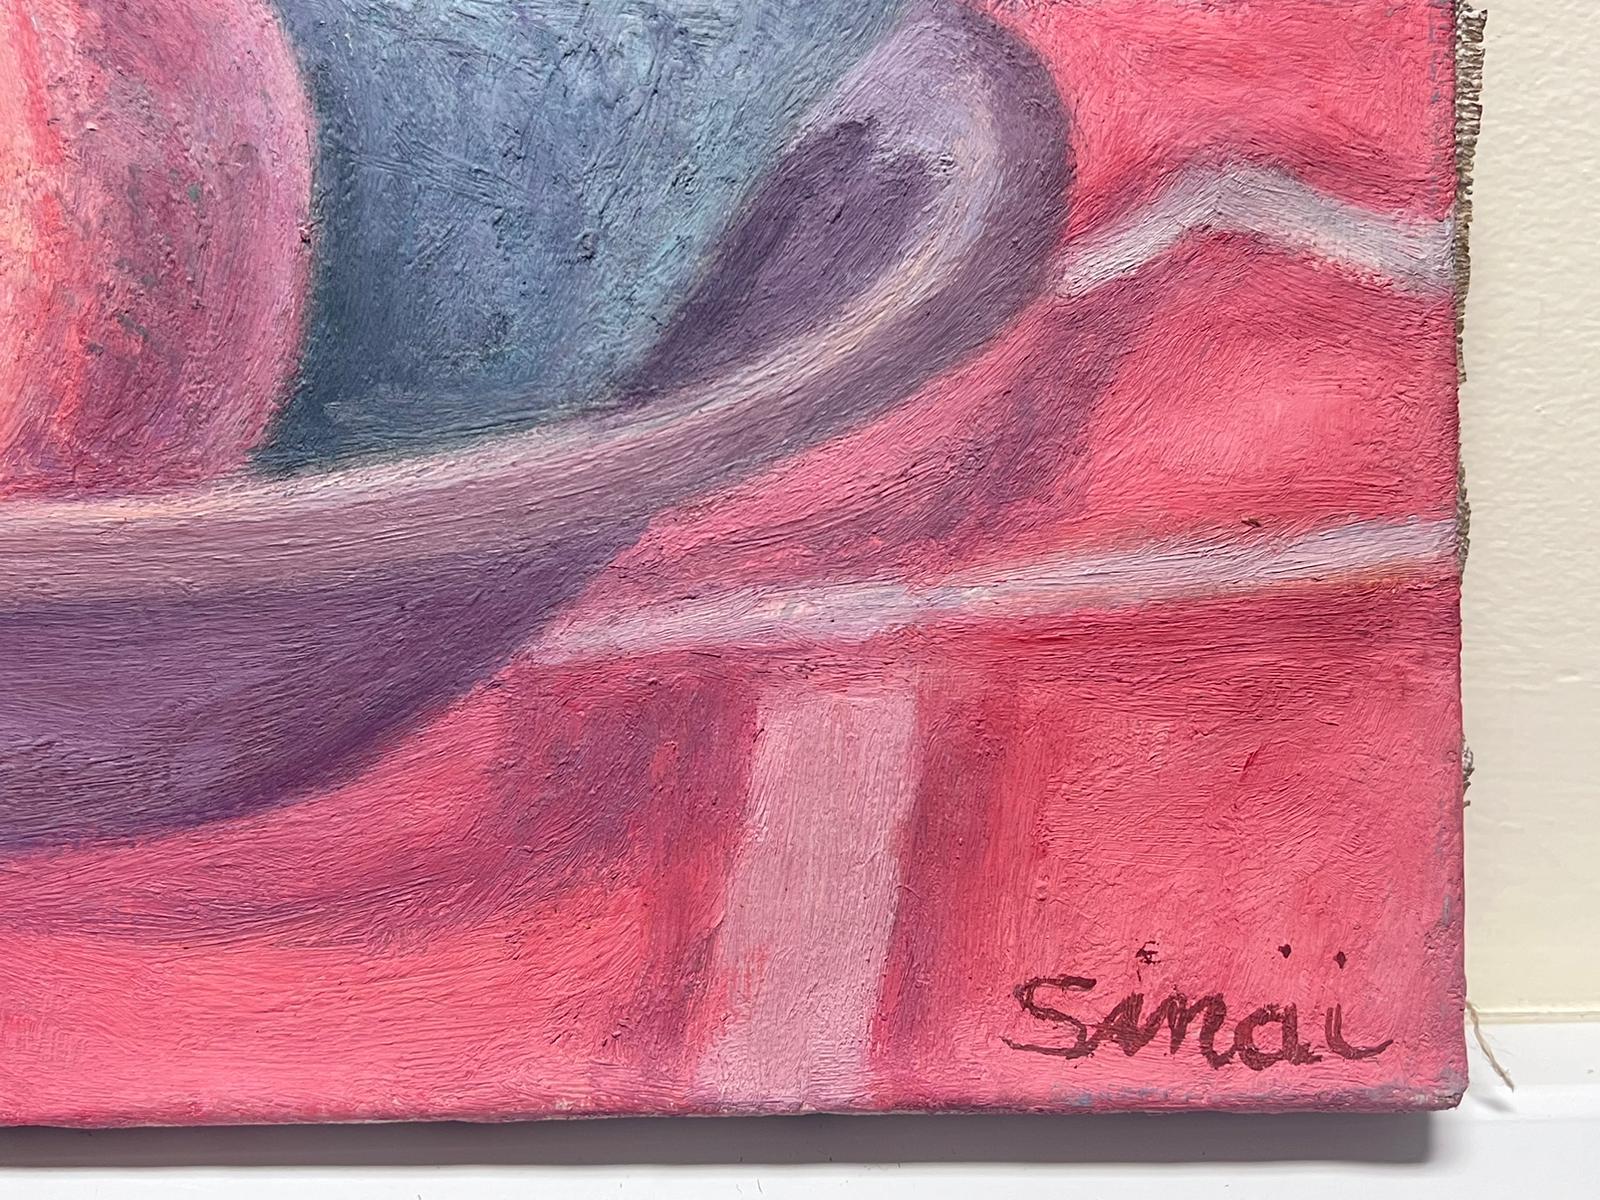 unterzeichnete Sinai
Französische post-impressionistische Schule, Ende des 20.
Ölgemälde auf Leinwand, ungerahmt
Leinwand: 10,75 x 14 Zoll
Provenienz: Privatsammlung
Zustand: sehr guter und gesunder Zustand 
